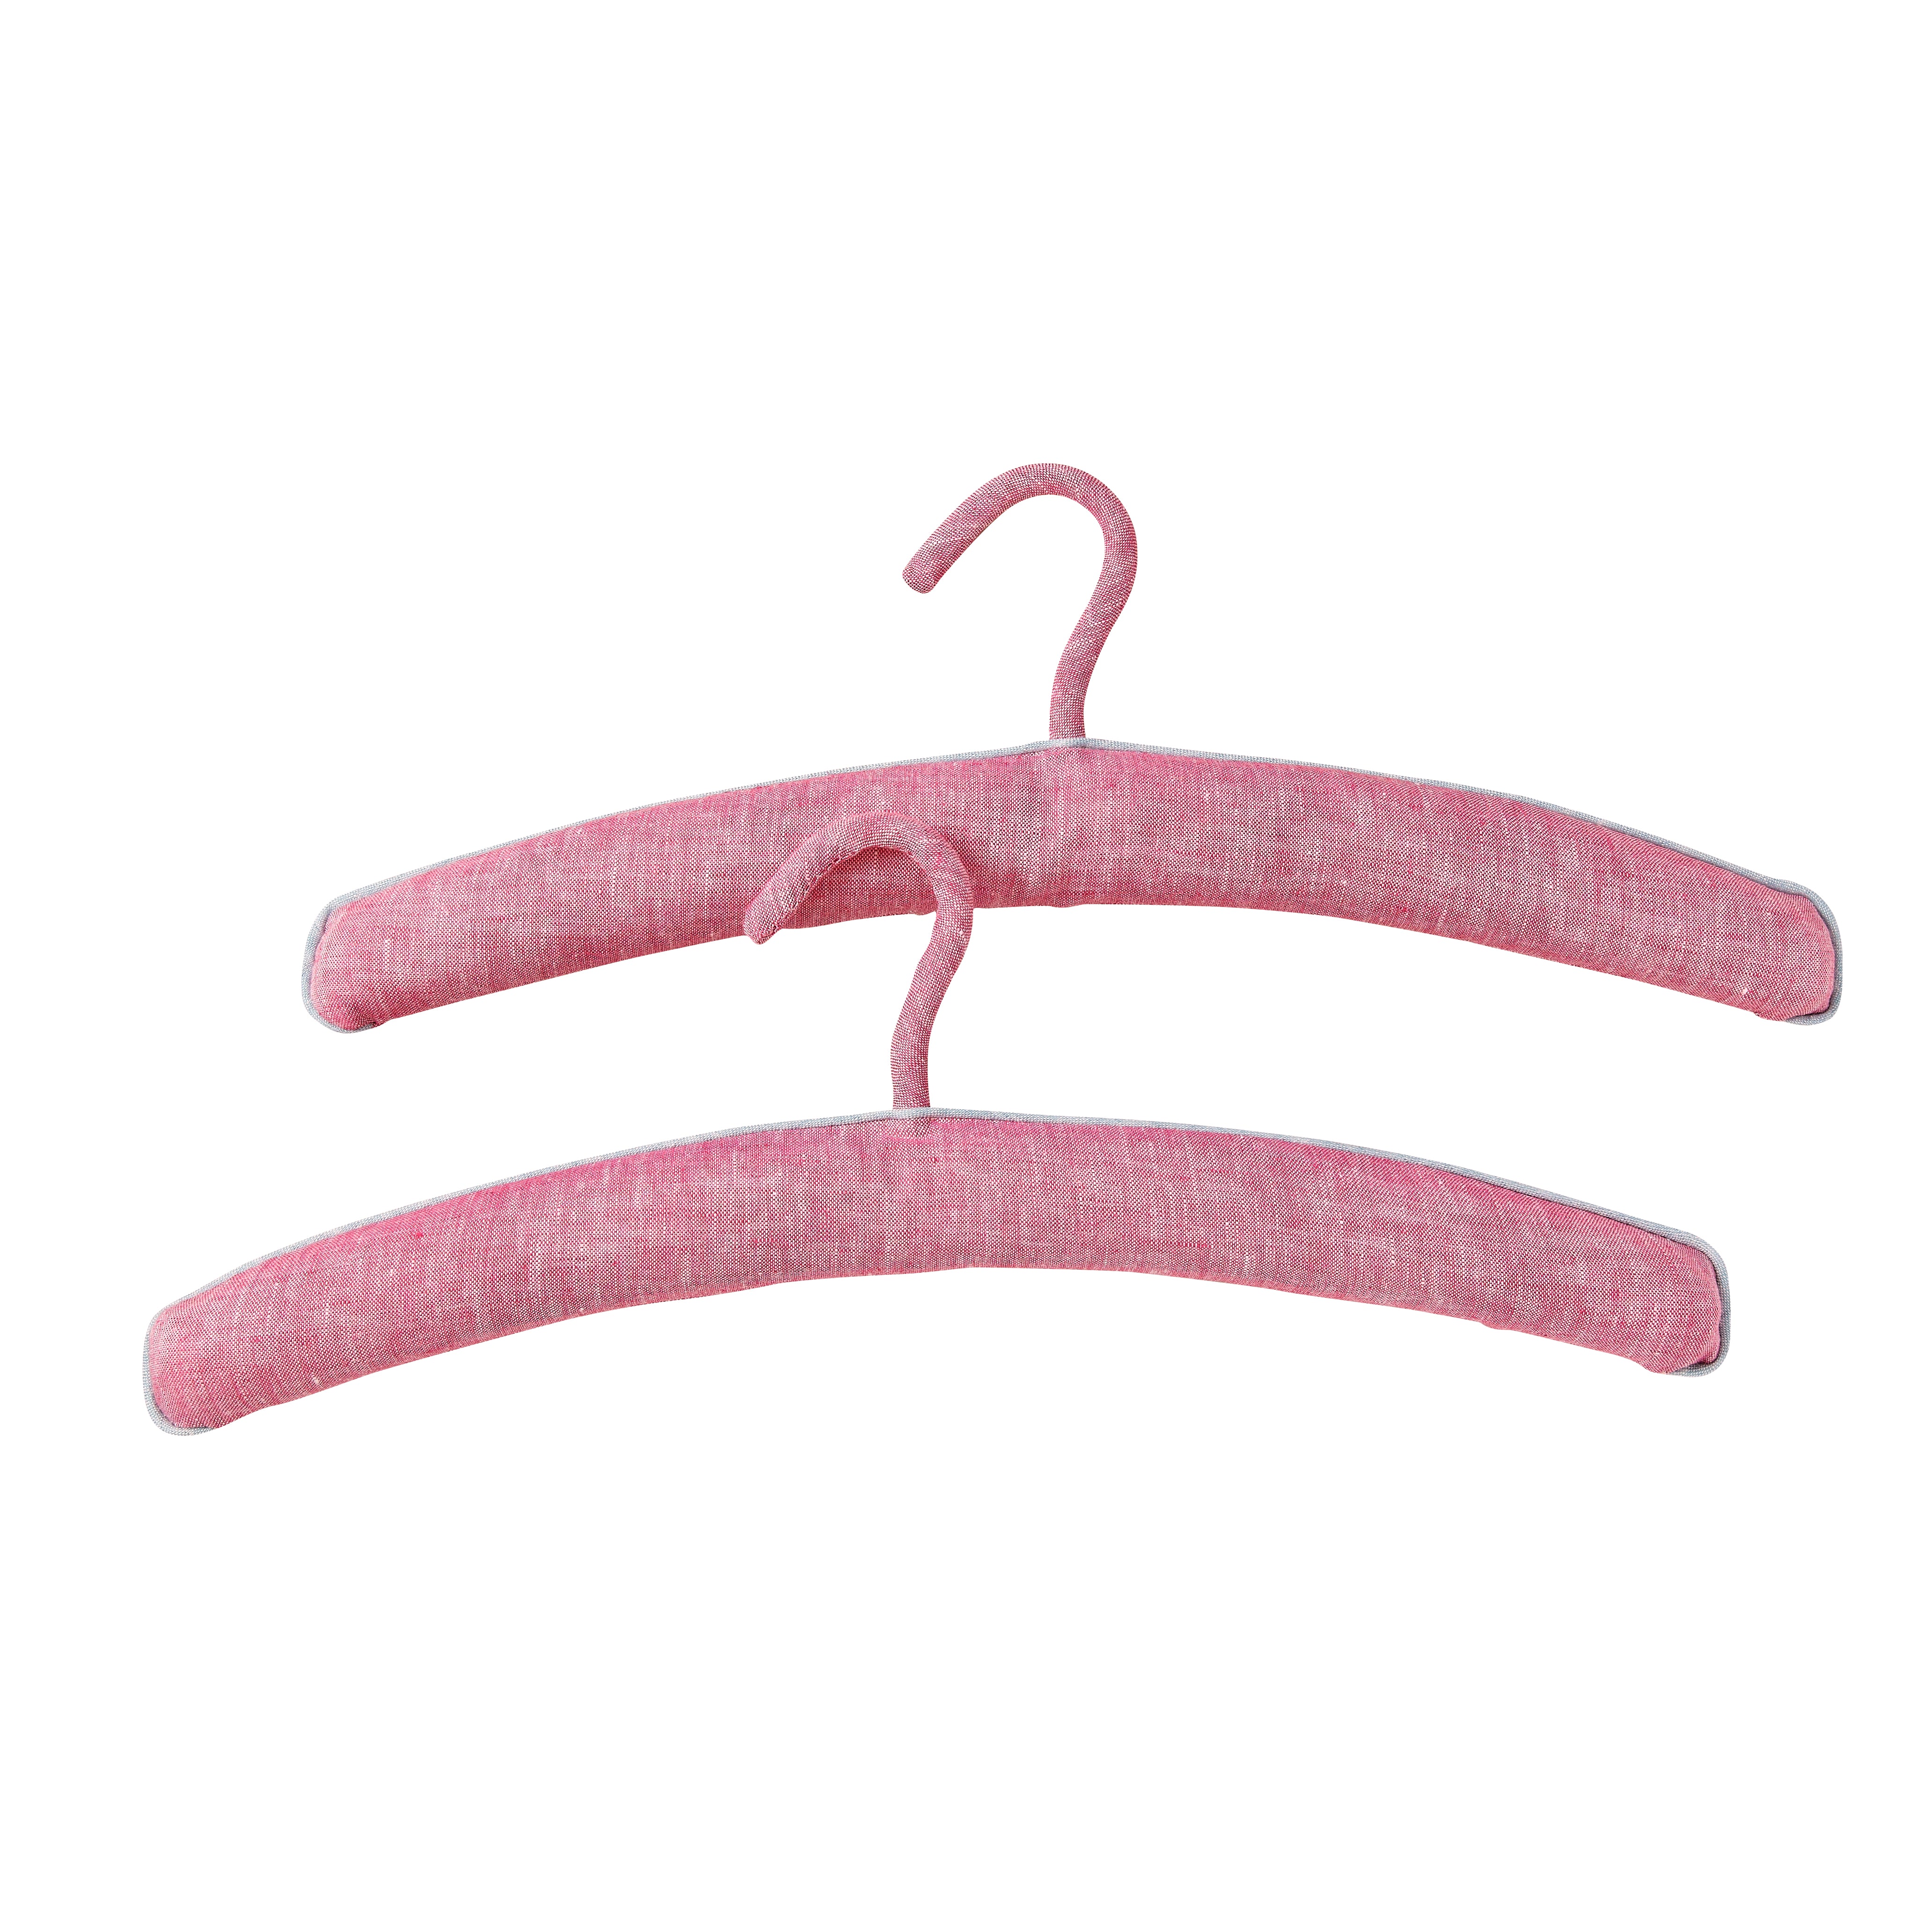 Pair of Linen Hangers - Pink/Aqua